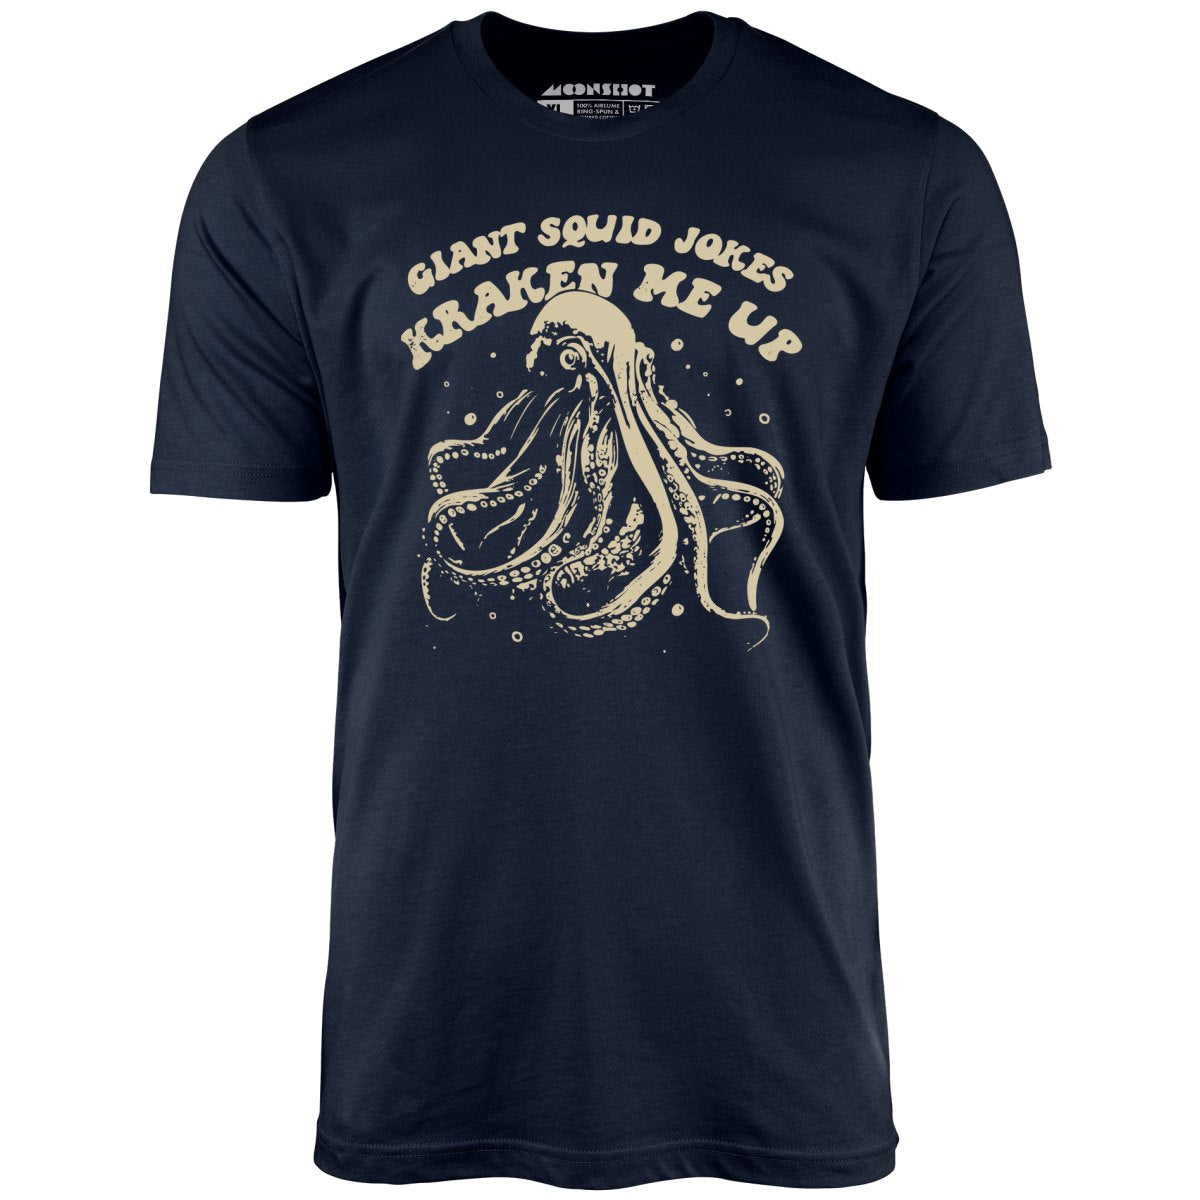 Giant Squid Jokes Kraken Me Up - Unisex T-Shirt